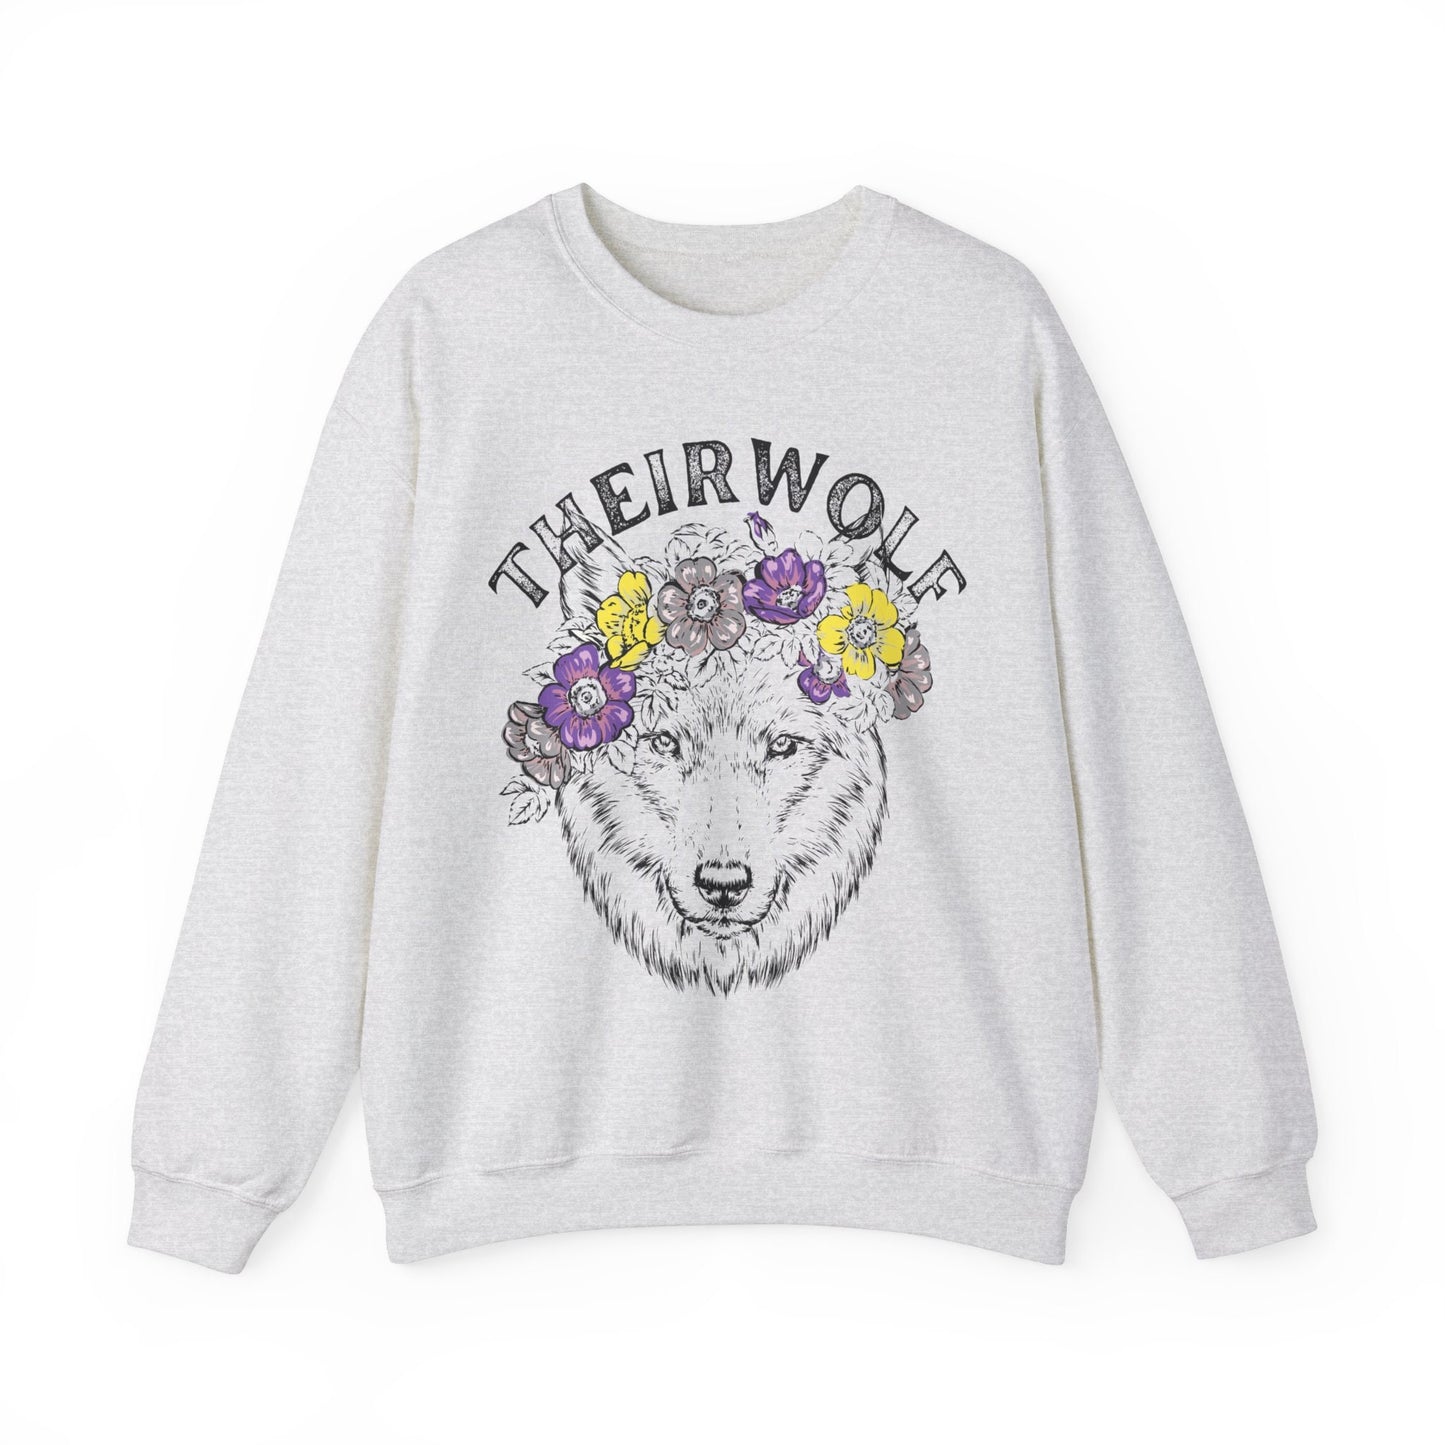 Theirwolf sweatshirt